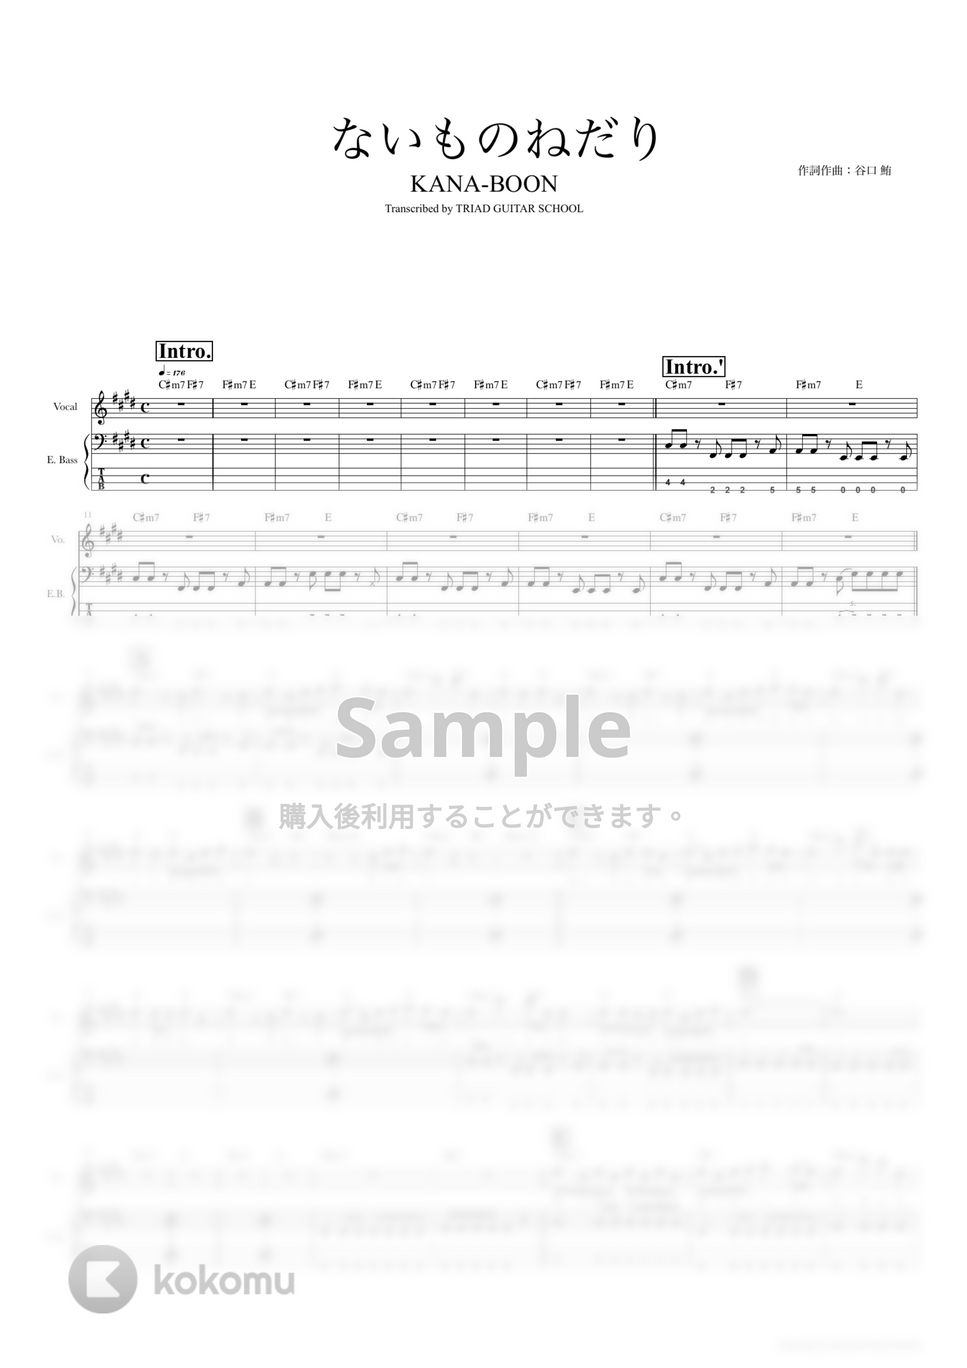 KANA-BOON - ないものねだり (ベーススコア・歌詞・コード付き) by TRIAD GUITAR SCHOOL